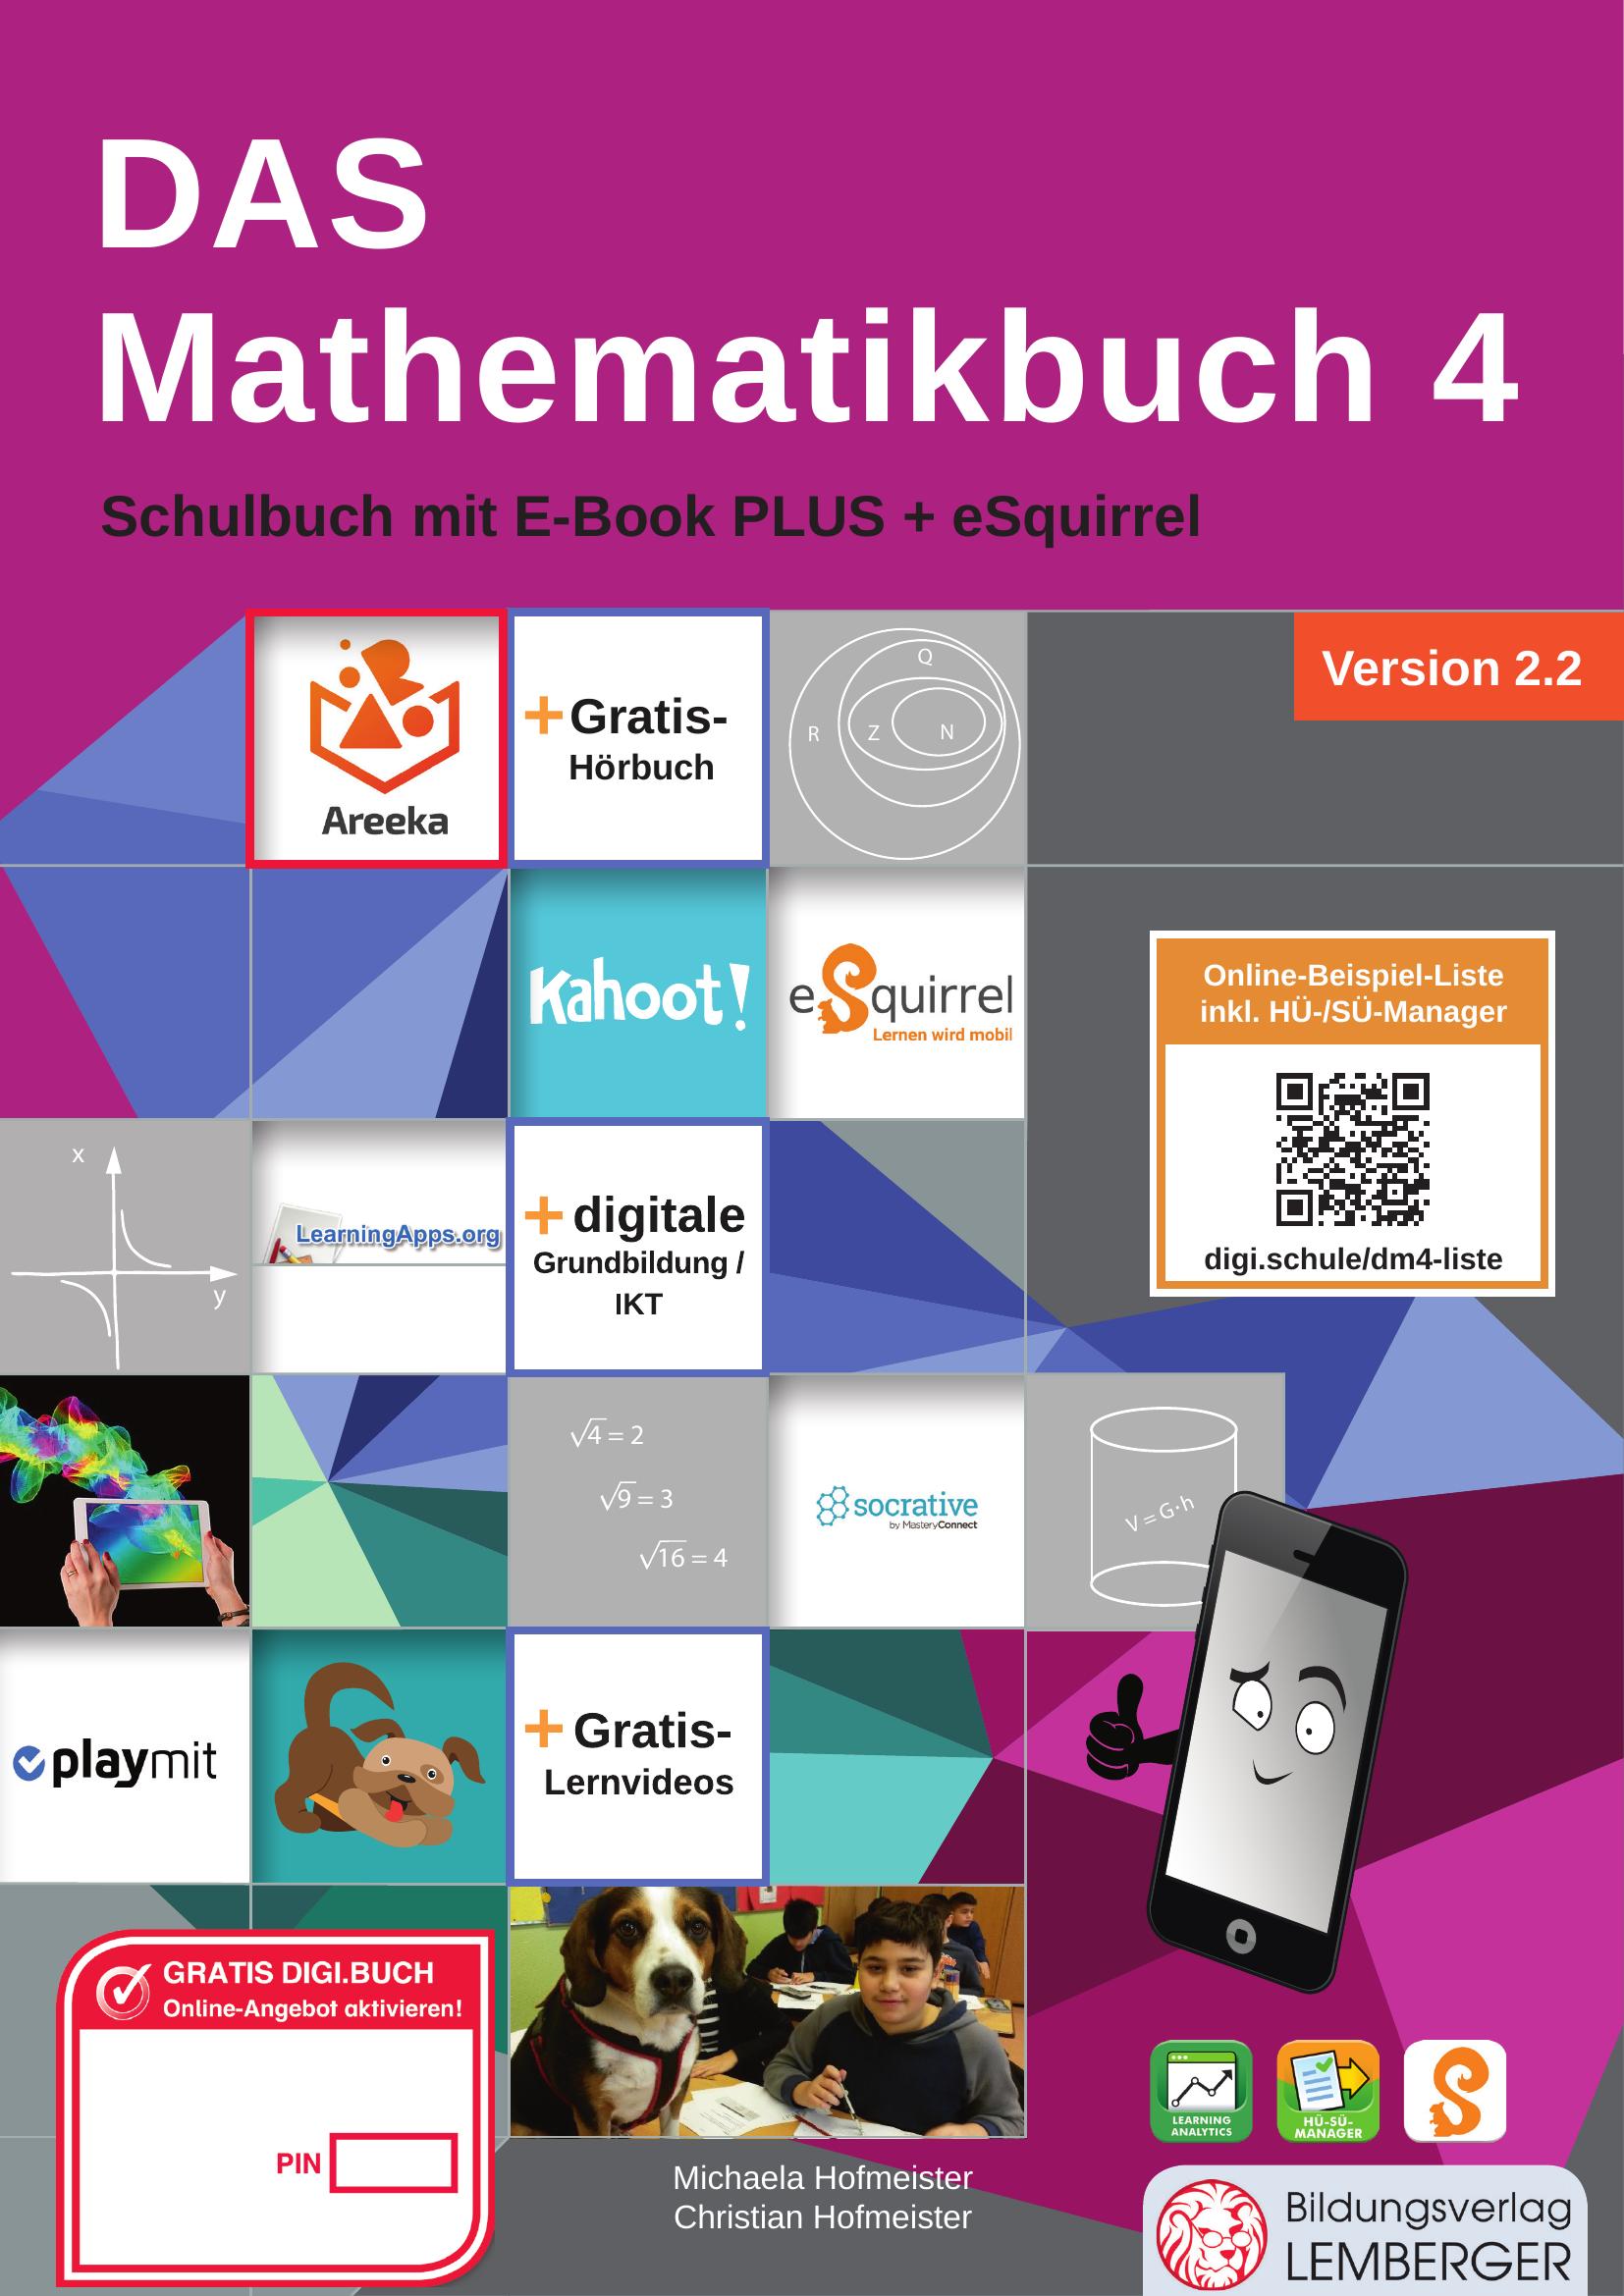 DAS Mathematikbuch 4 IKT v2.2